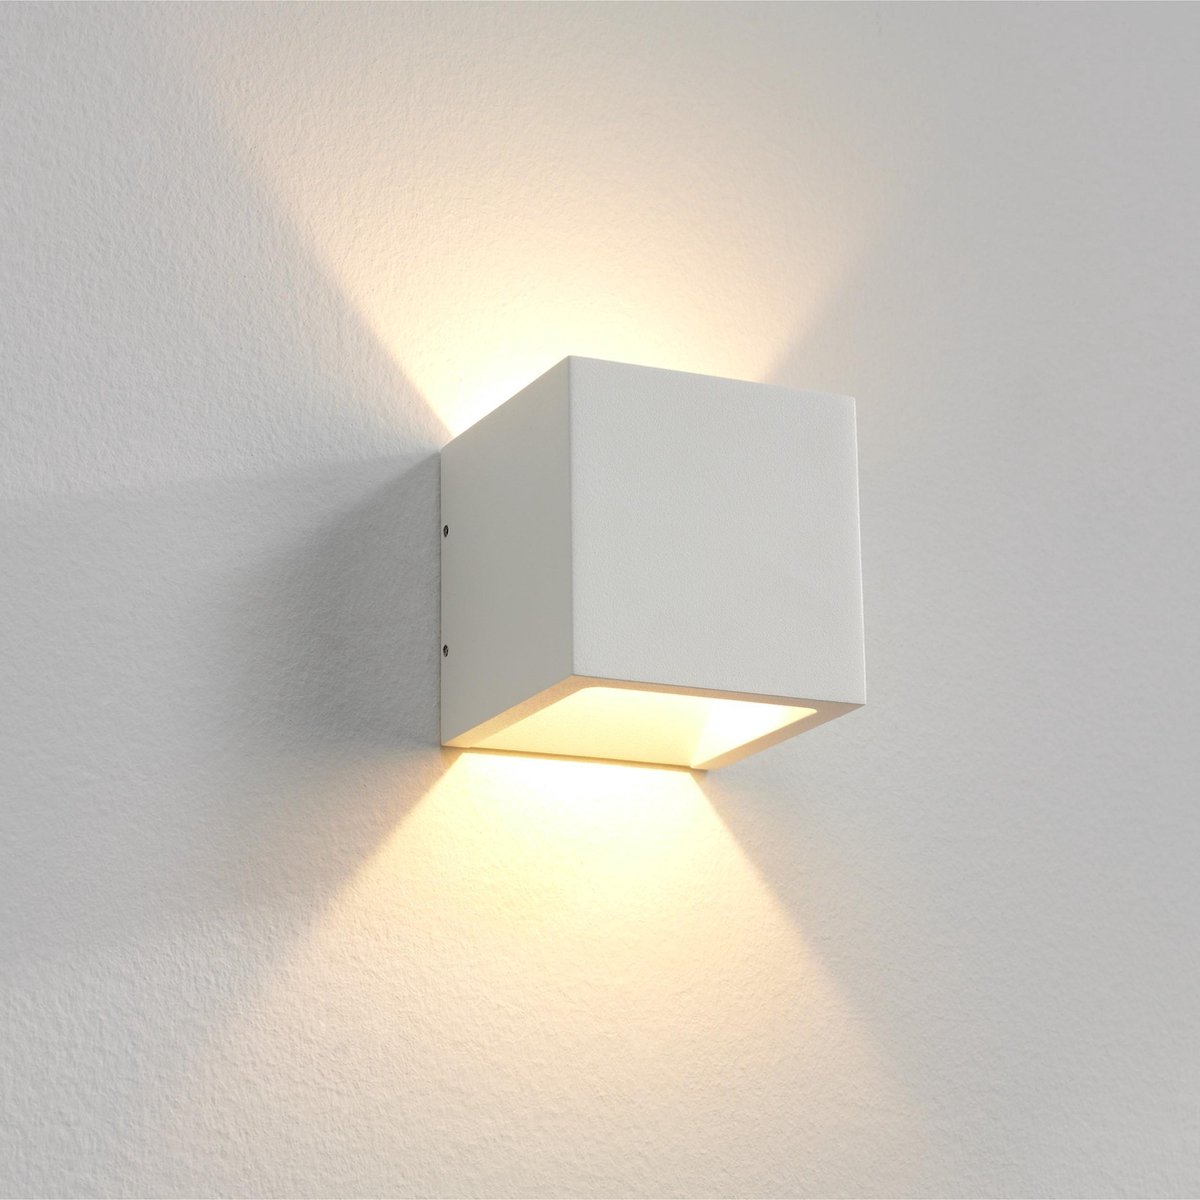 Wandlamp Cube Wit Dim To Warm - 10x10x10cm - LED 6W 1800K-3000K 600lm - IP54 - Dim To Warm > wandlamp binnen wit | wandlamp buiten wit | wandlamp wit | muurlamp wit | led lamp wit | sfeer lamp wit | dim to warm | design lamp wit